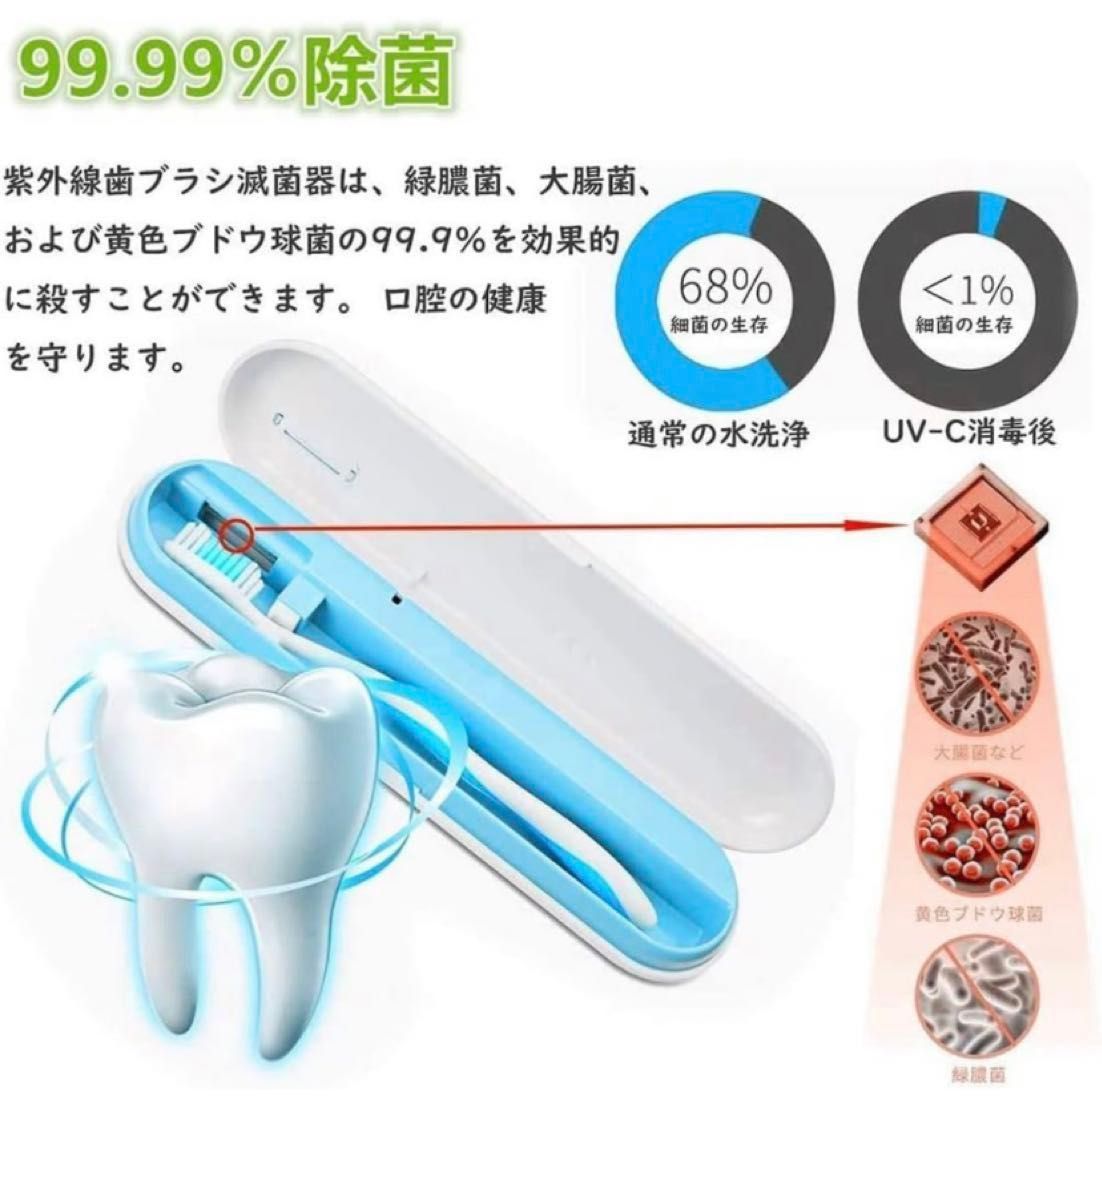 新品 2個セット 歯ブラシ 除菌 UV-C除菌 歯ブラシ除菌器 カビ防止 梅雨対策 歯ブラシ除菌ケース USB充電式 持ち運び便利